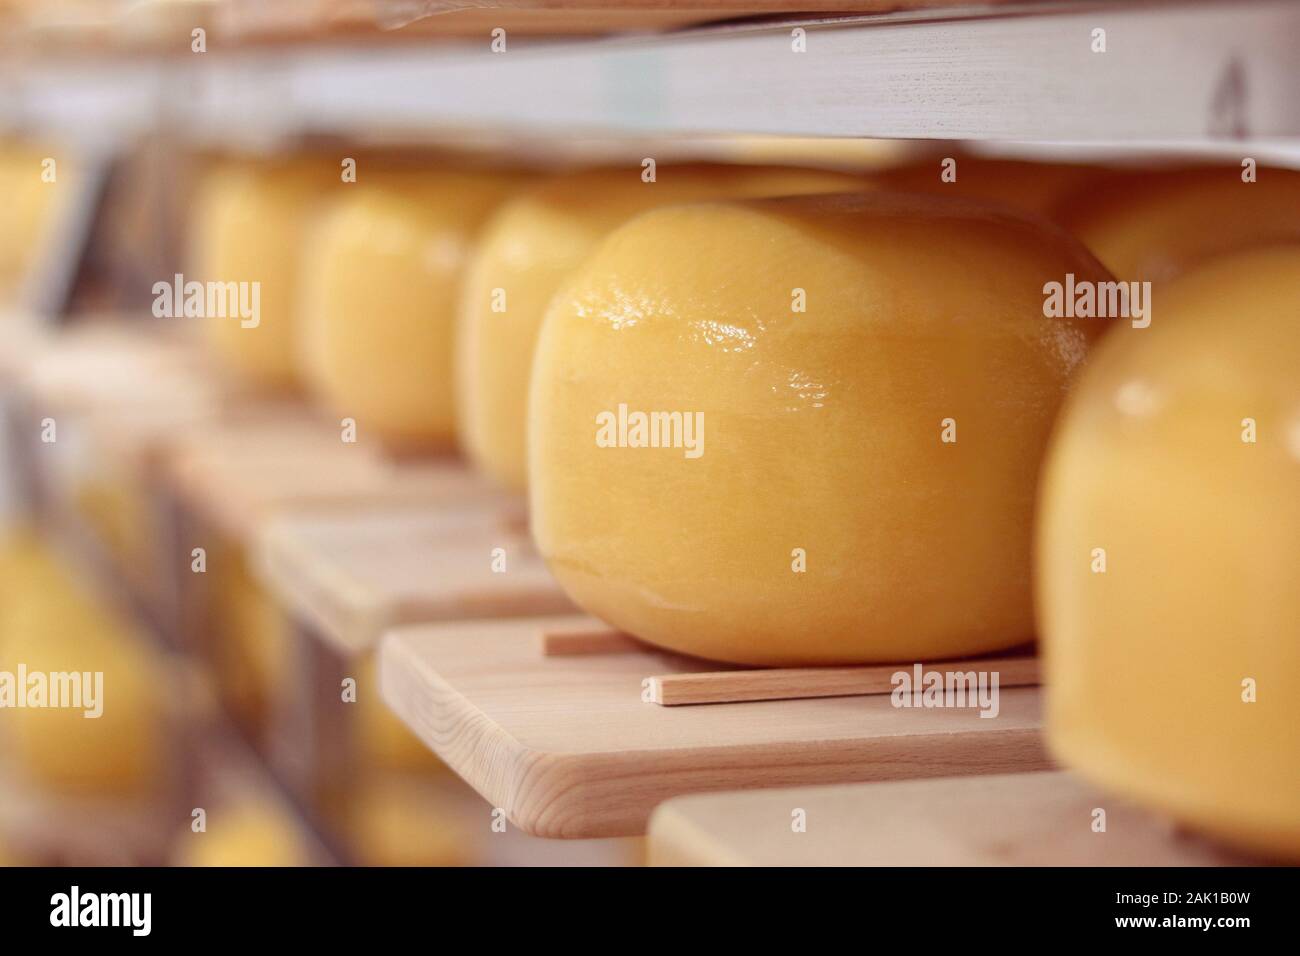 pani gialli di formaggio duro immagazzinati in una cantina fredda di caseificio Foto Stock